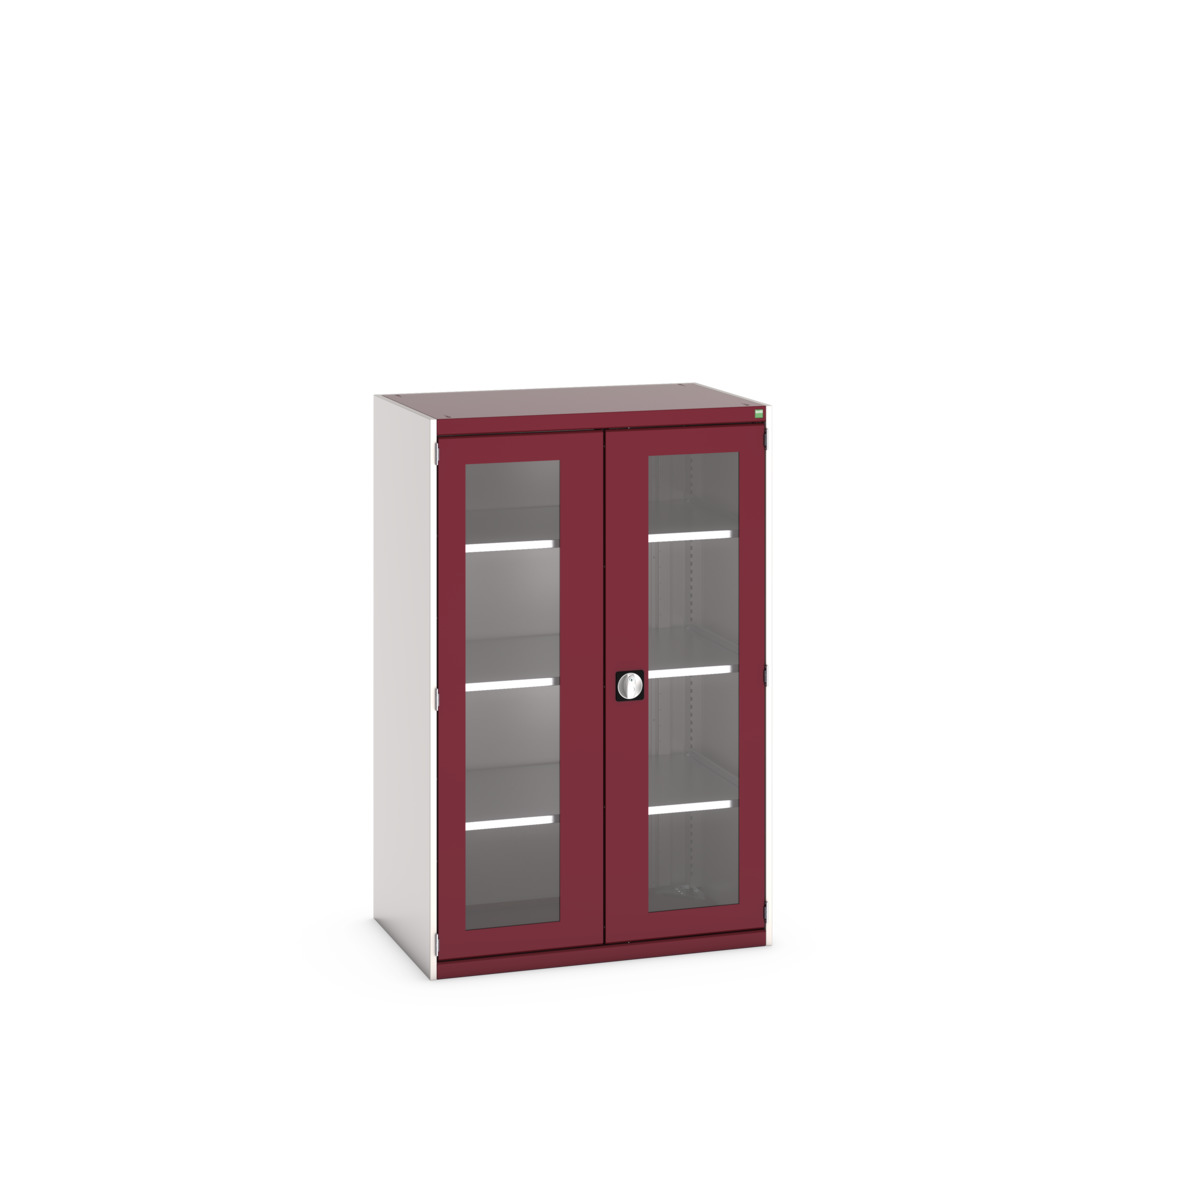 40021132.24V - cubio cupboard